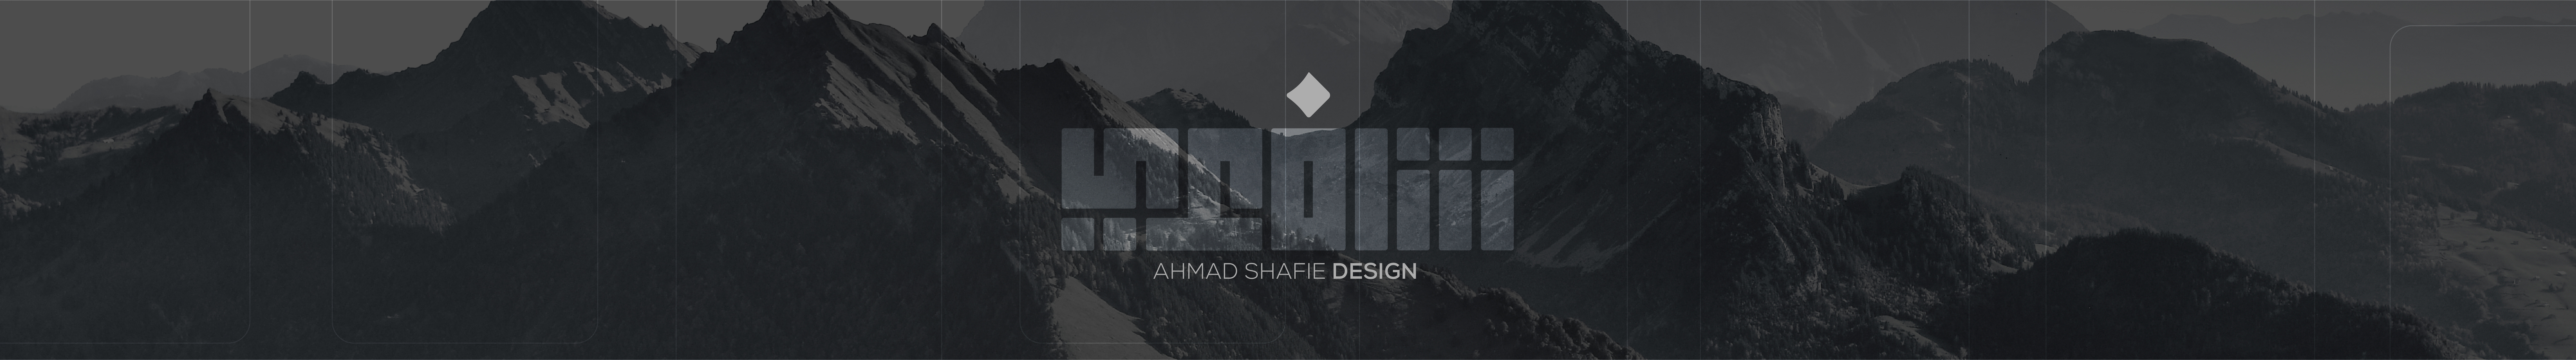 Baner profilu użytkownika ahmad shafie